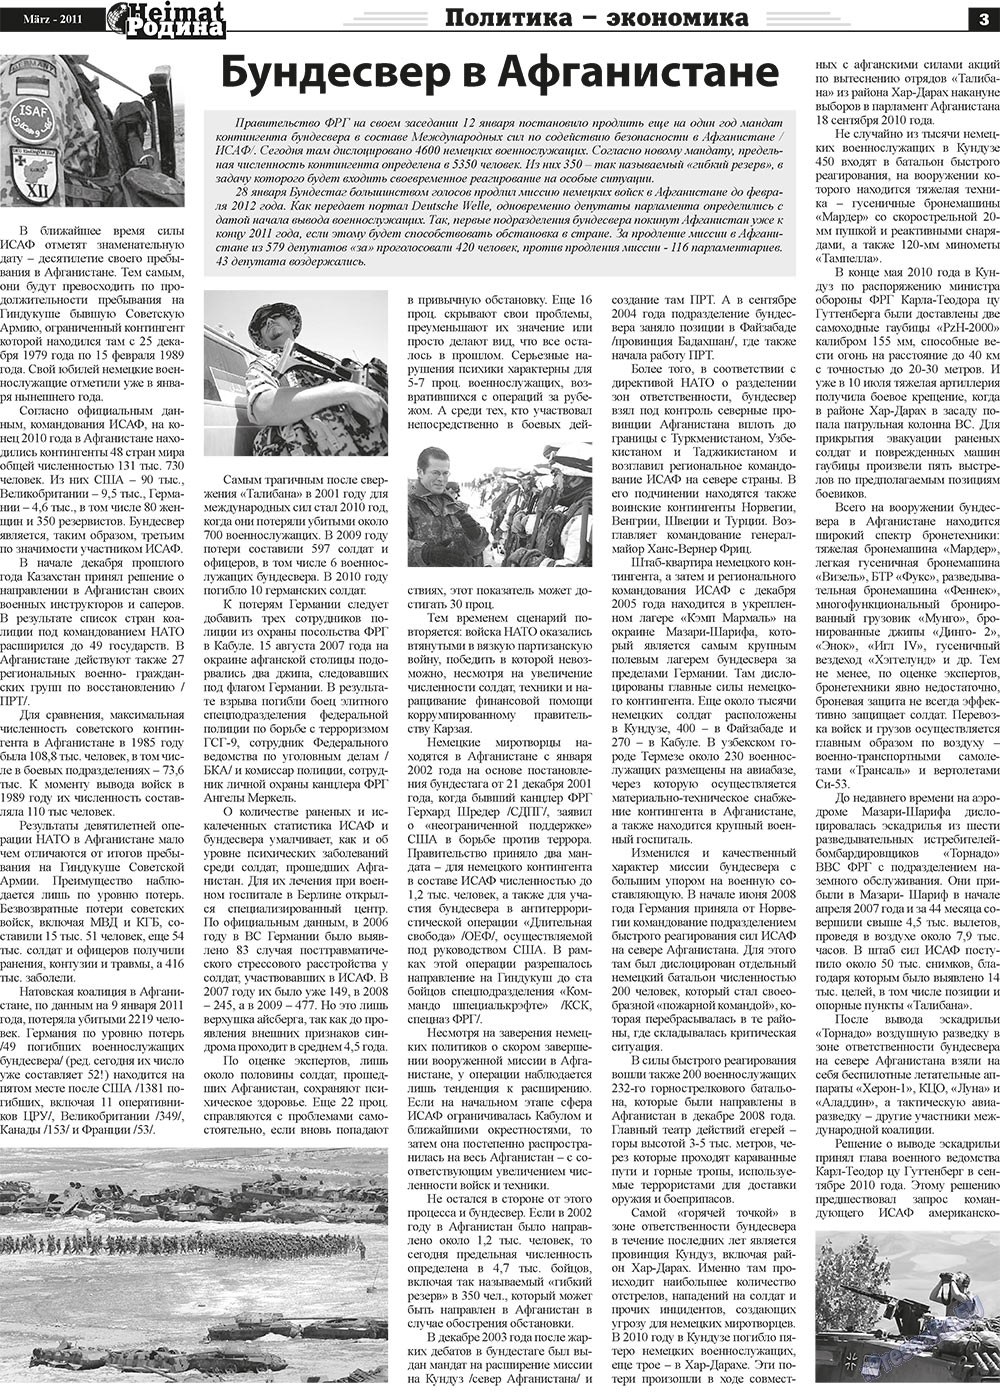 Heimat-Родина (газета). 2011 год, номер 3, стр. 3